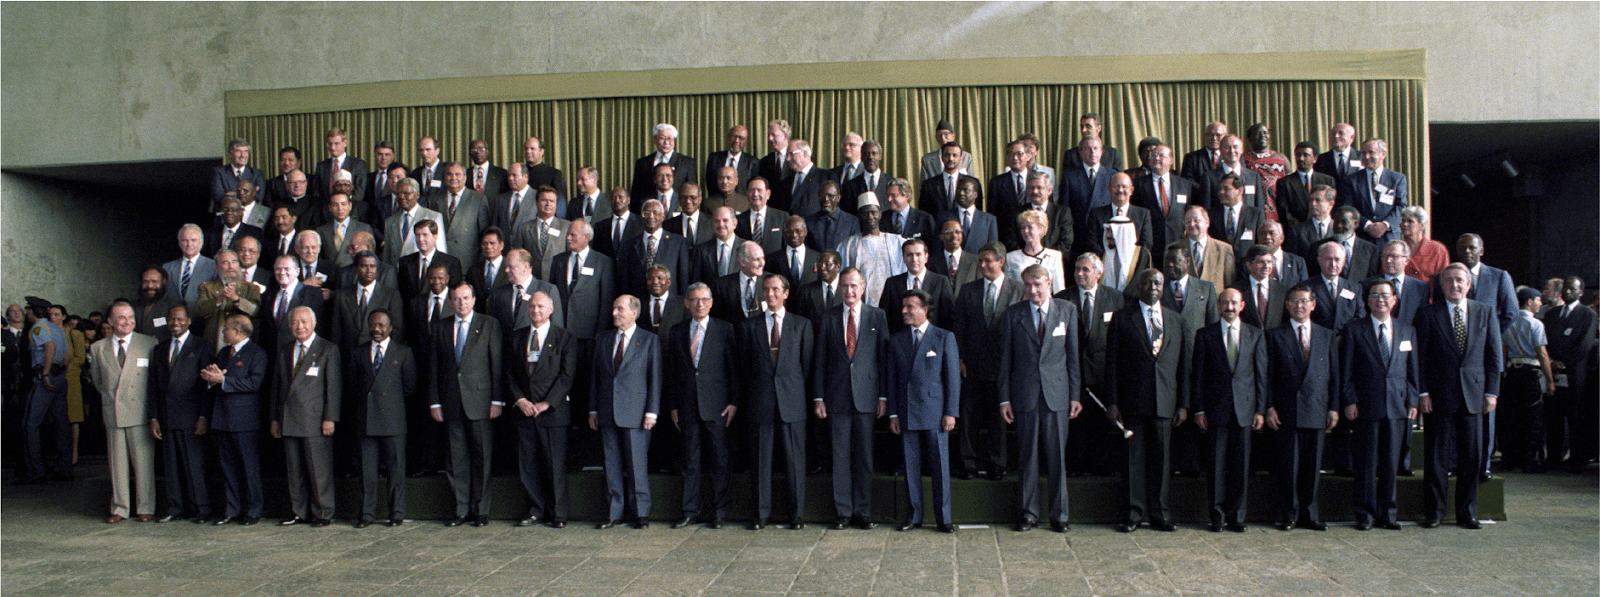 Конференция ООН по окружающей среде и развитию, 1992 год